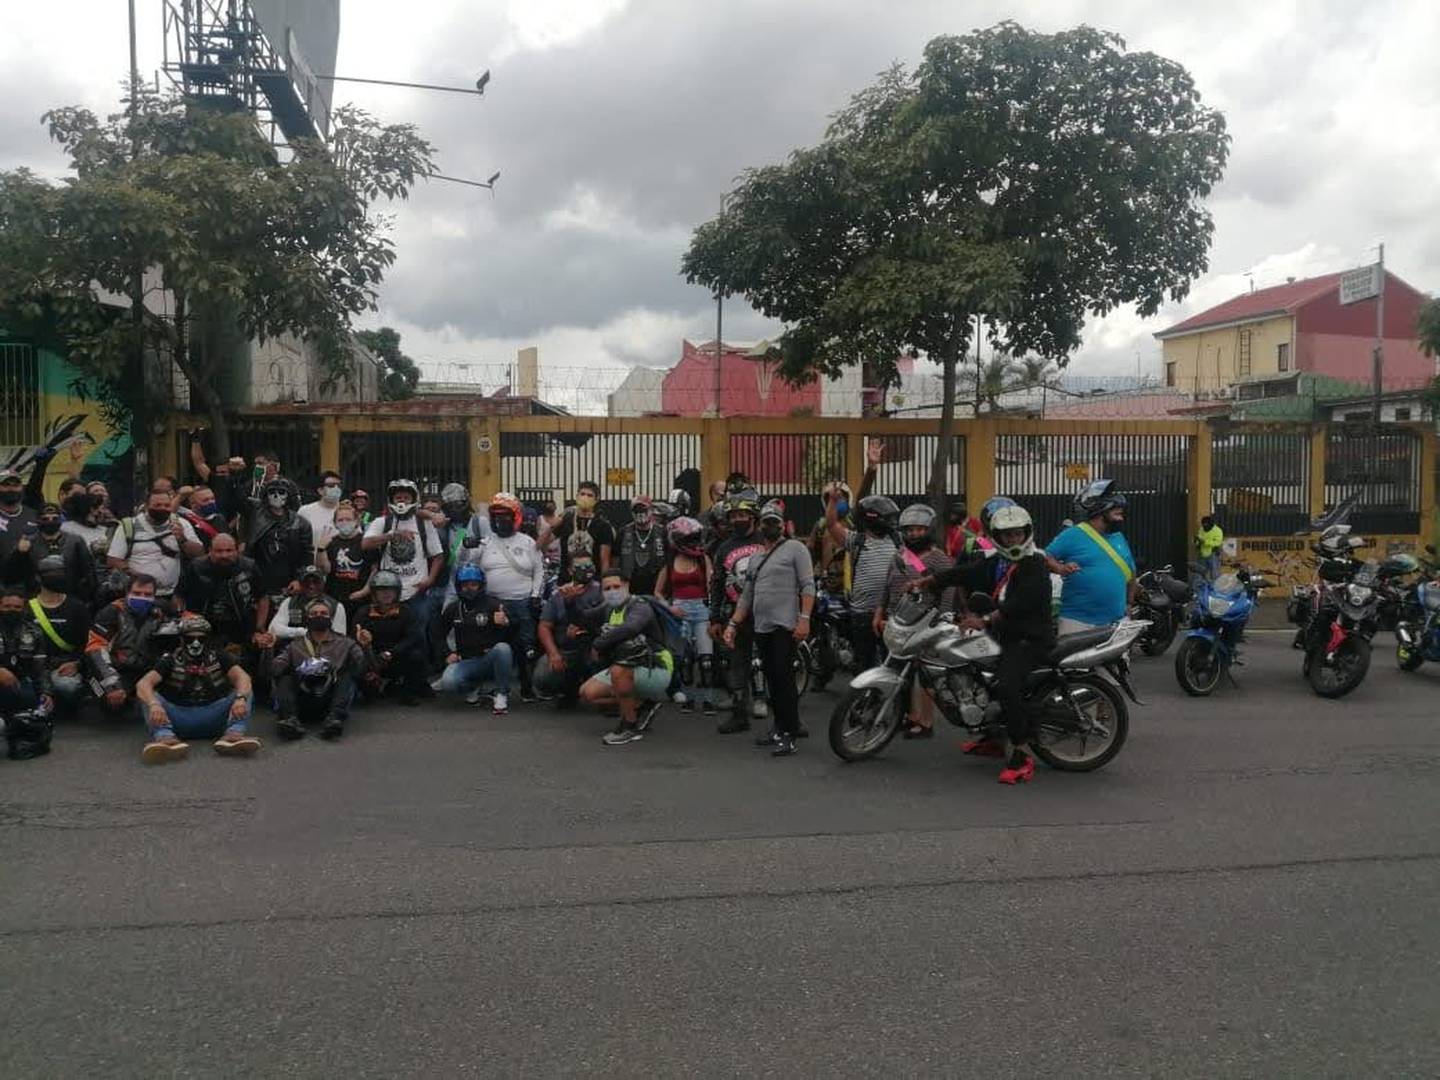 Eduardo Murillo Chavarría, vocero del Comité Cívico Nacional de Motociclistas, le entregó al diputado socialcristiano Pedro Muñoz, la petición de rebaja del marchamo. Los moteros del país piden rebaja sustancial en el pago del marchamo 2021.